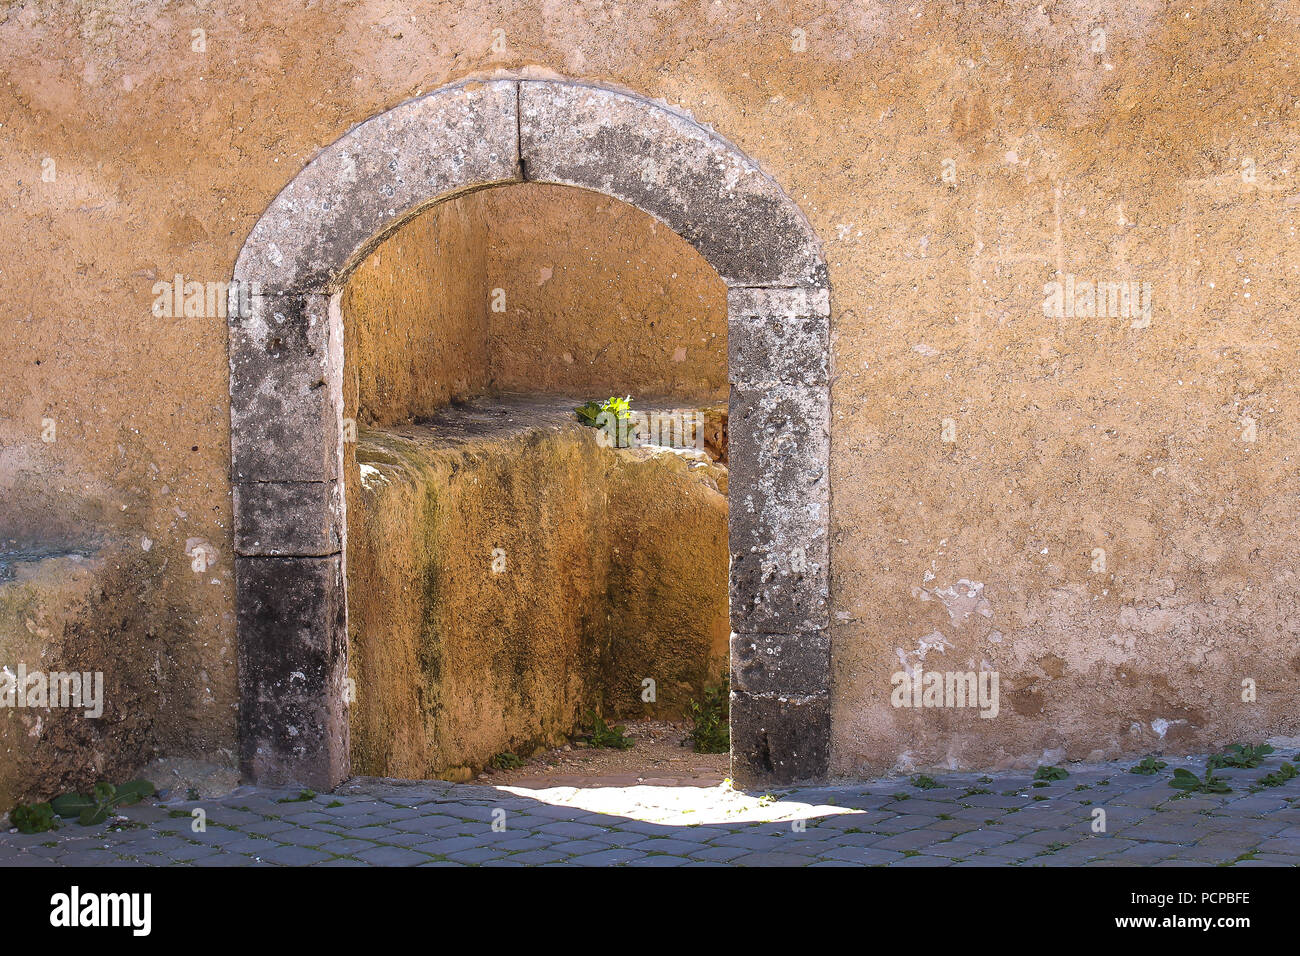 Façade structurée du mur avec une porte avec un arc en pierre et le châssis. Entrée d'une chambre à l'enrichissement d'El Jadida, Maroc. Banque D'Images